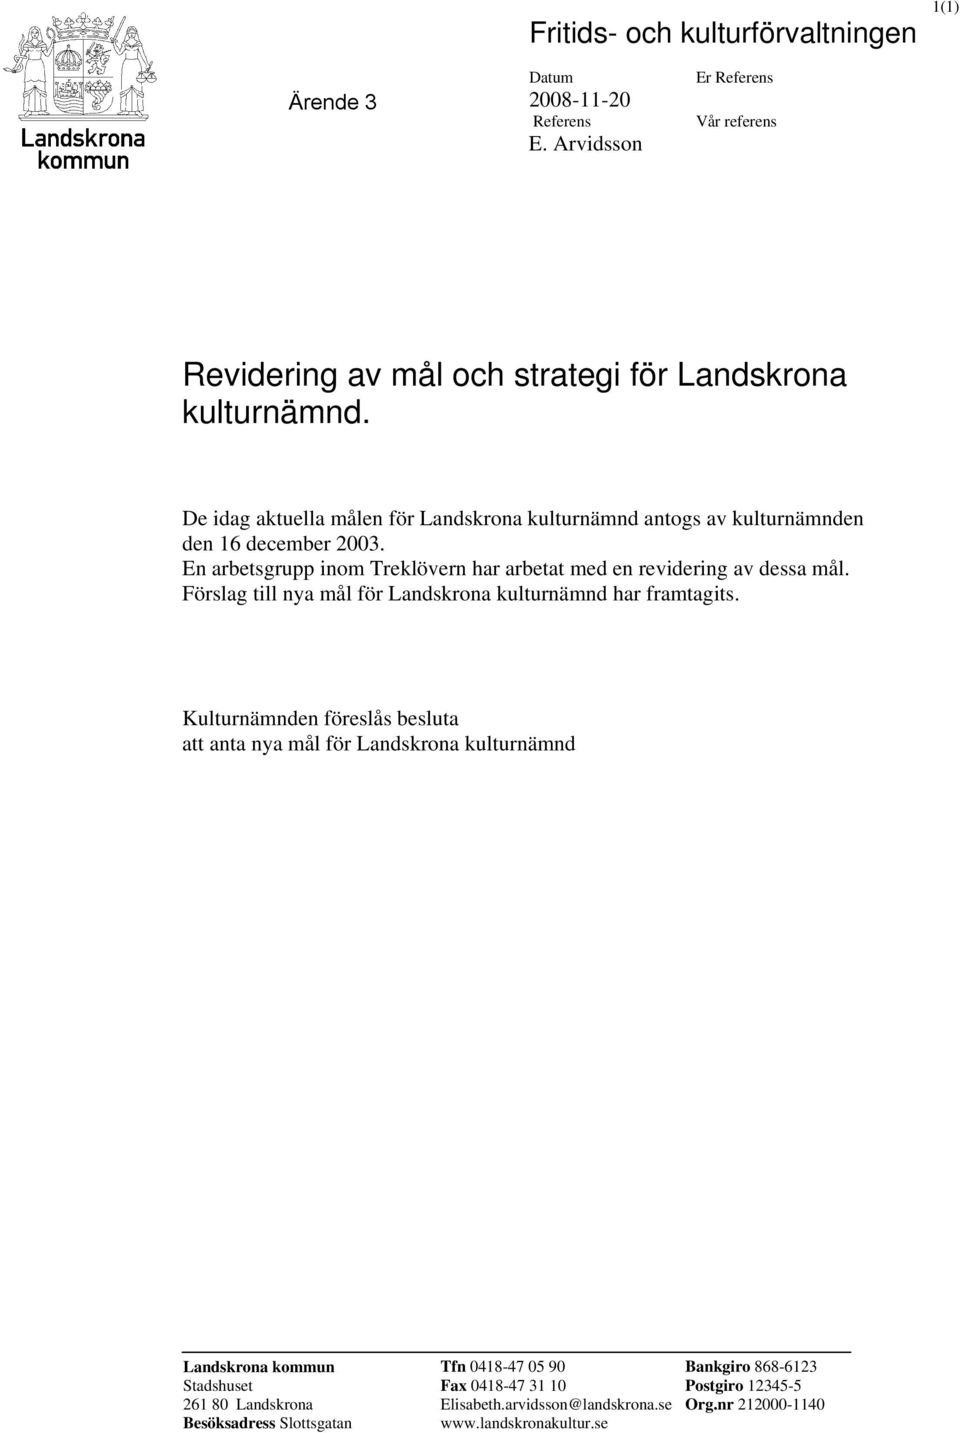 Förslag till nya mål för Landskrona kulturnämnd har framtagits.